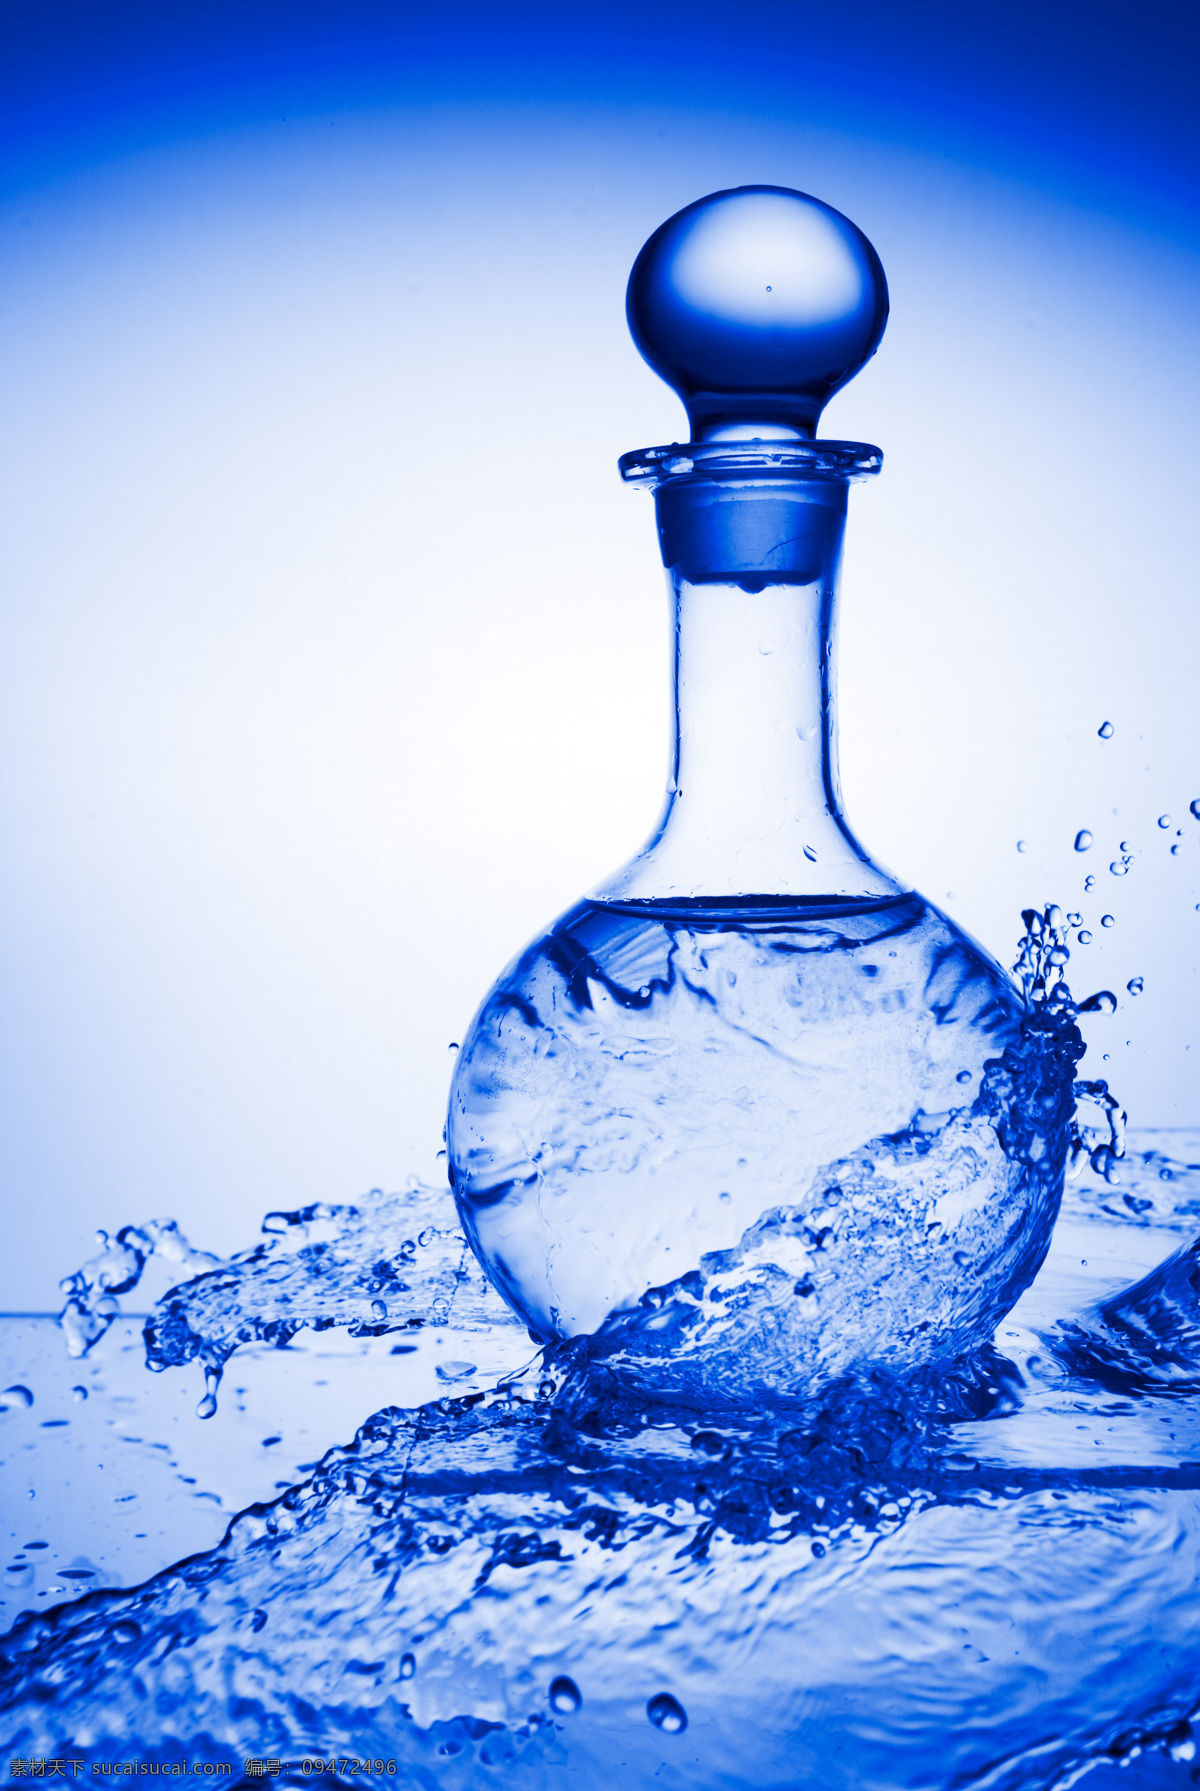 动感 水流 透明 晶莹剔透 动感水珠 水滴 瓶子 玻璃容器 特写 摄影图 水图片 生活百科